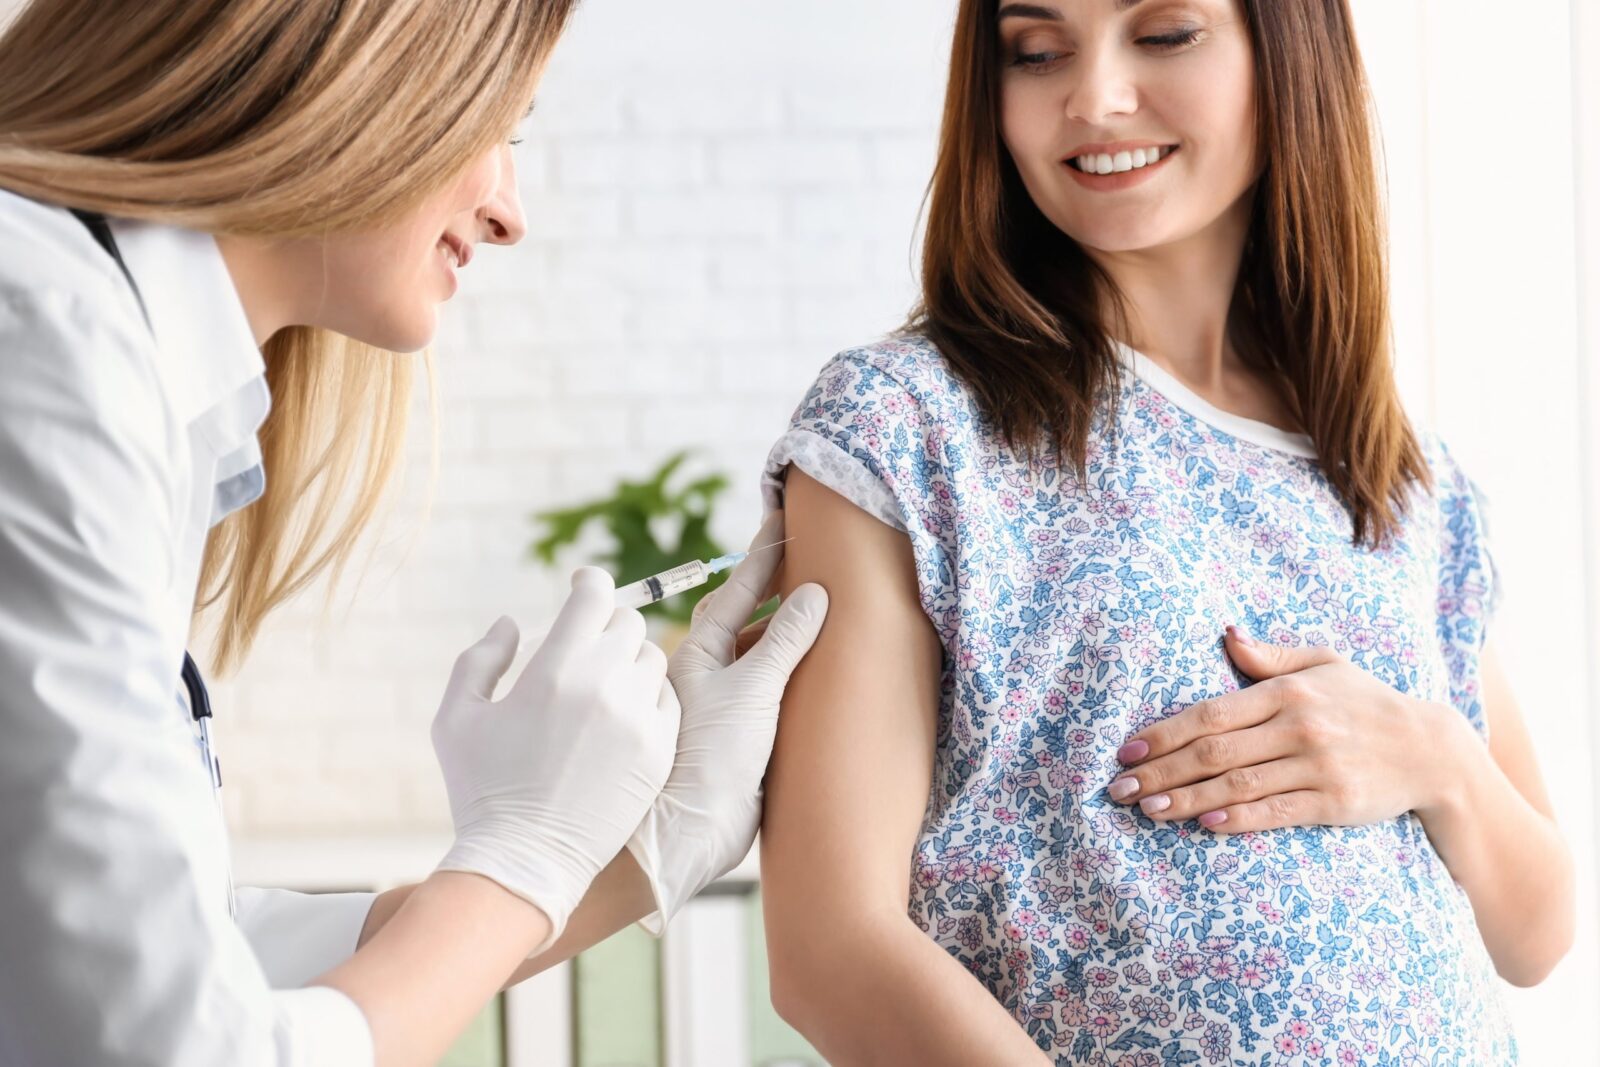 vacinacao-na-gravidez-entenda-a-importancia-de-manter-a-carteirinha-em-dia